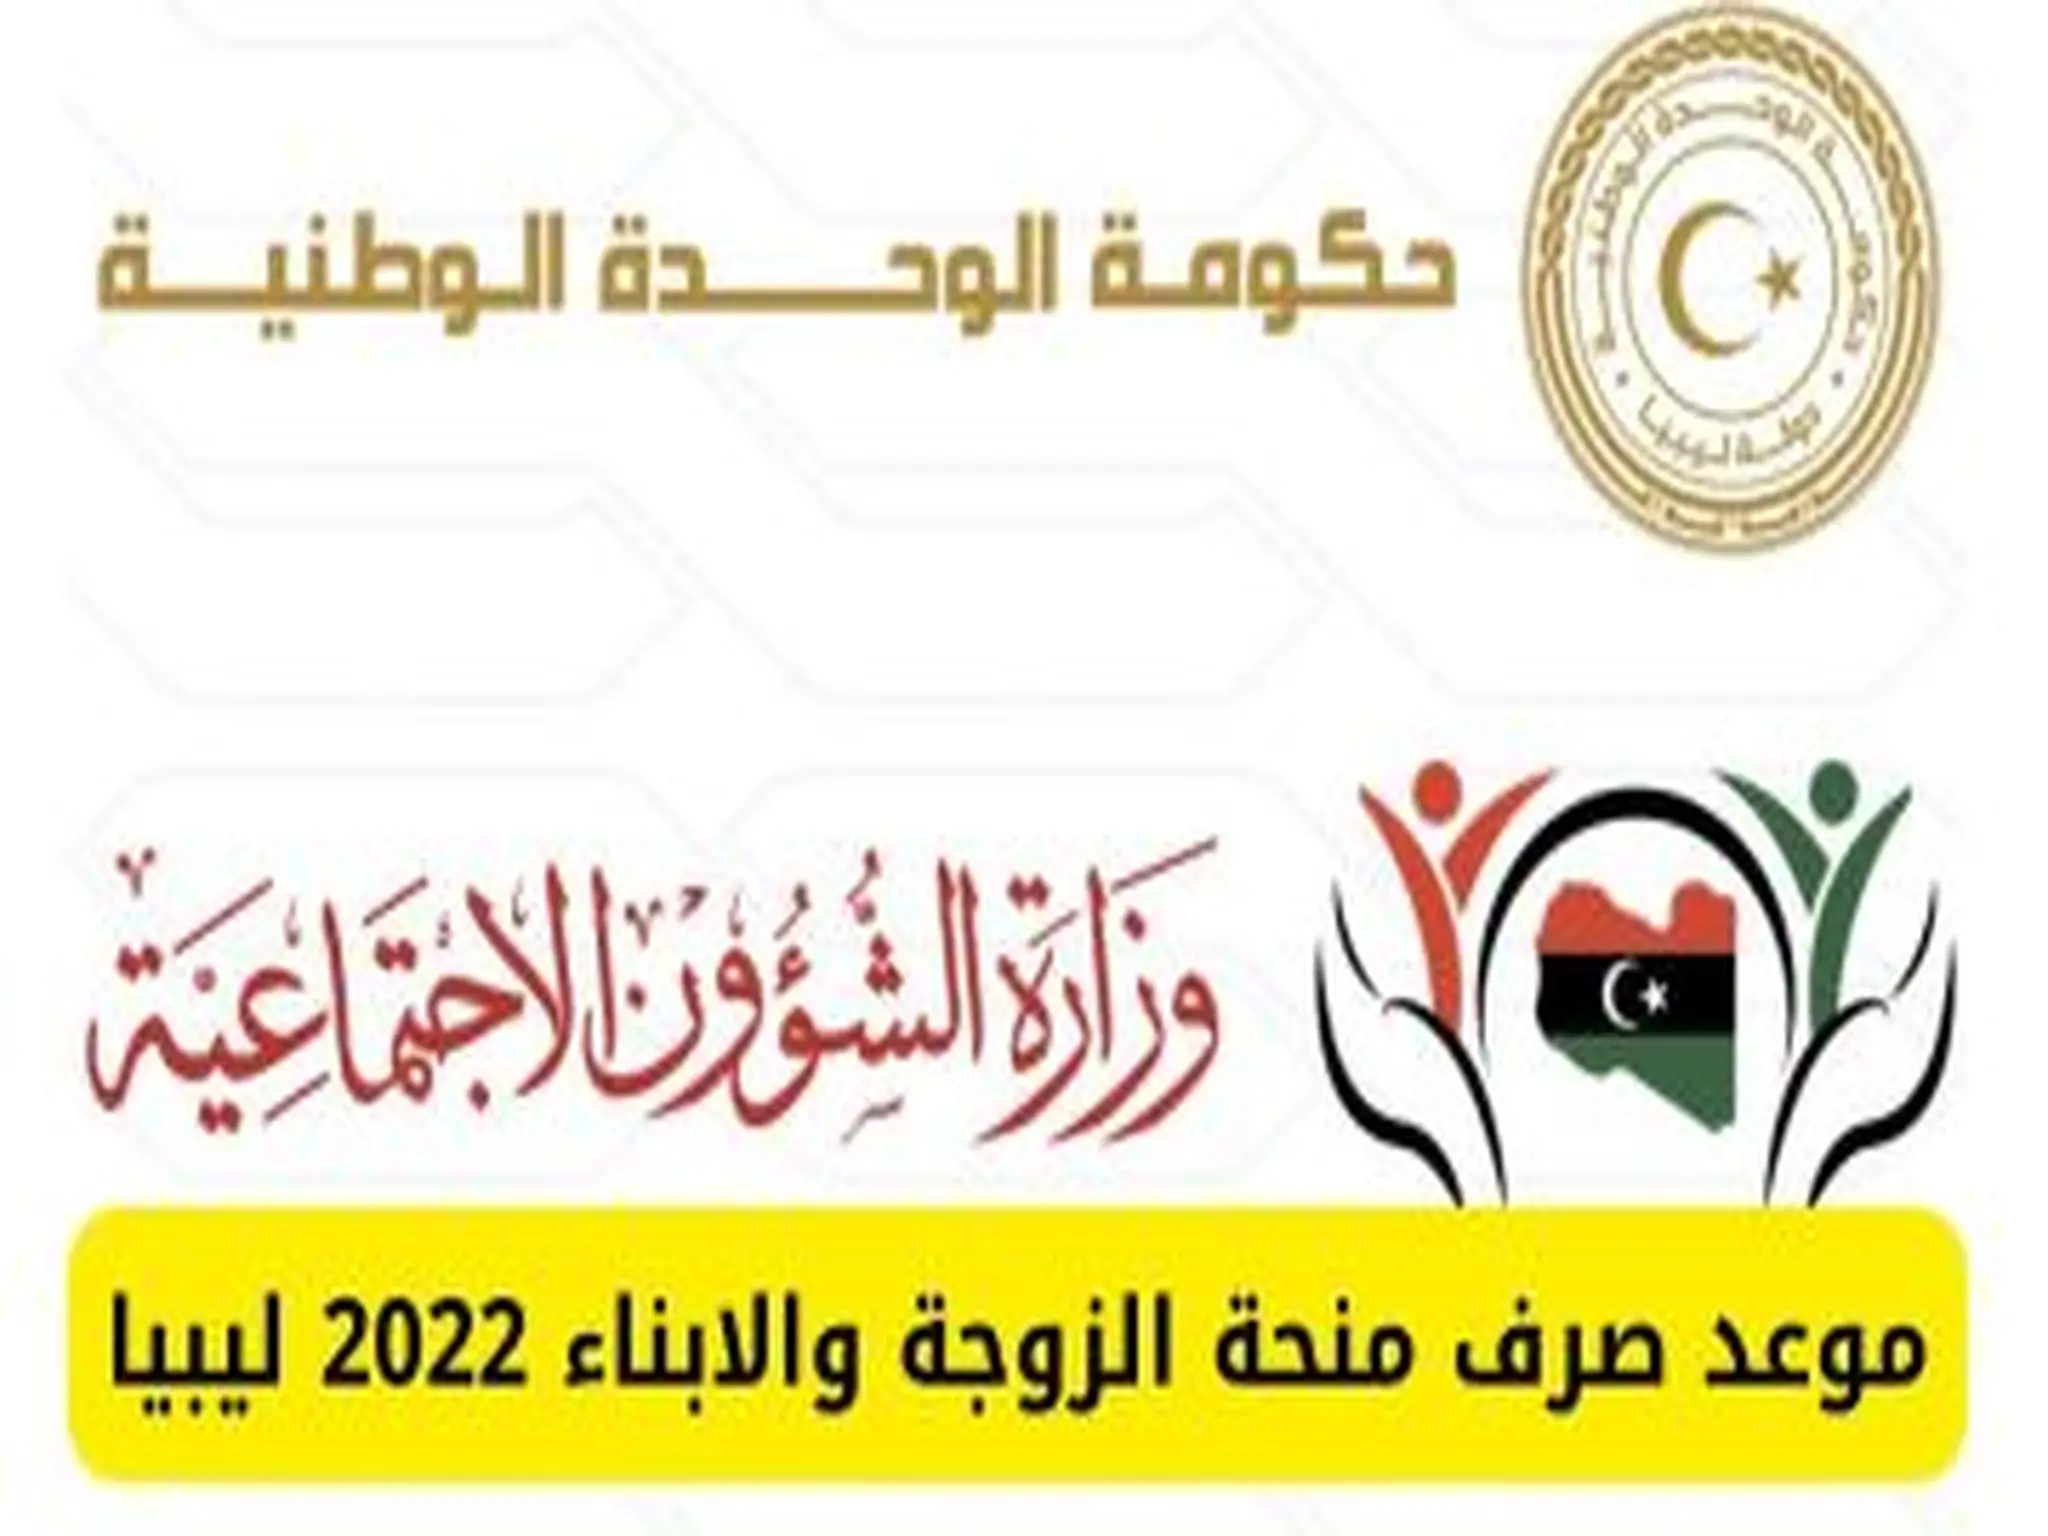 منحة الزوجة والابناء ليبيا 2022